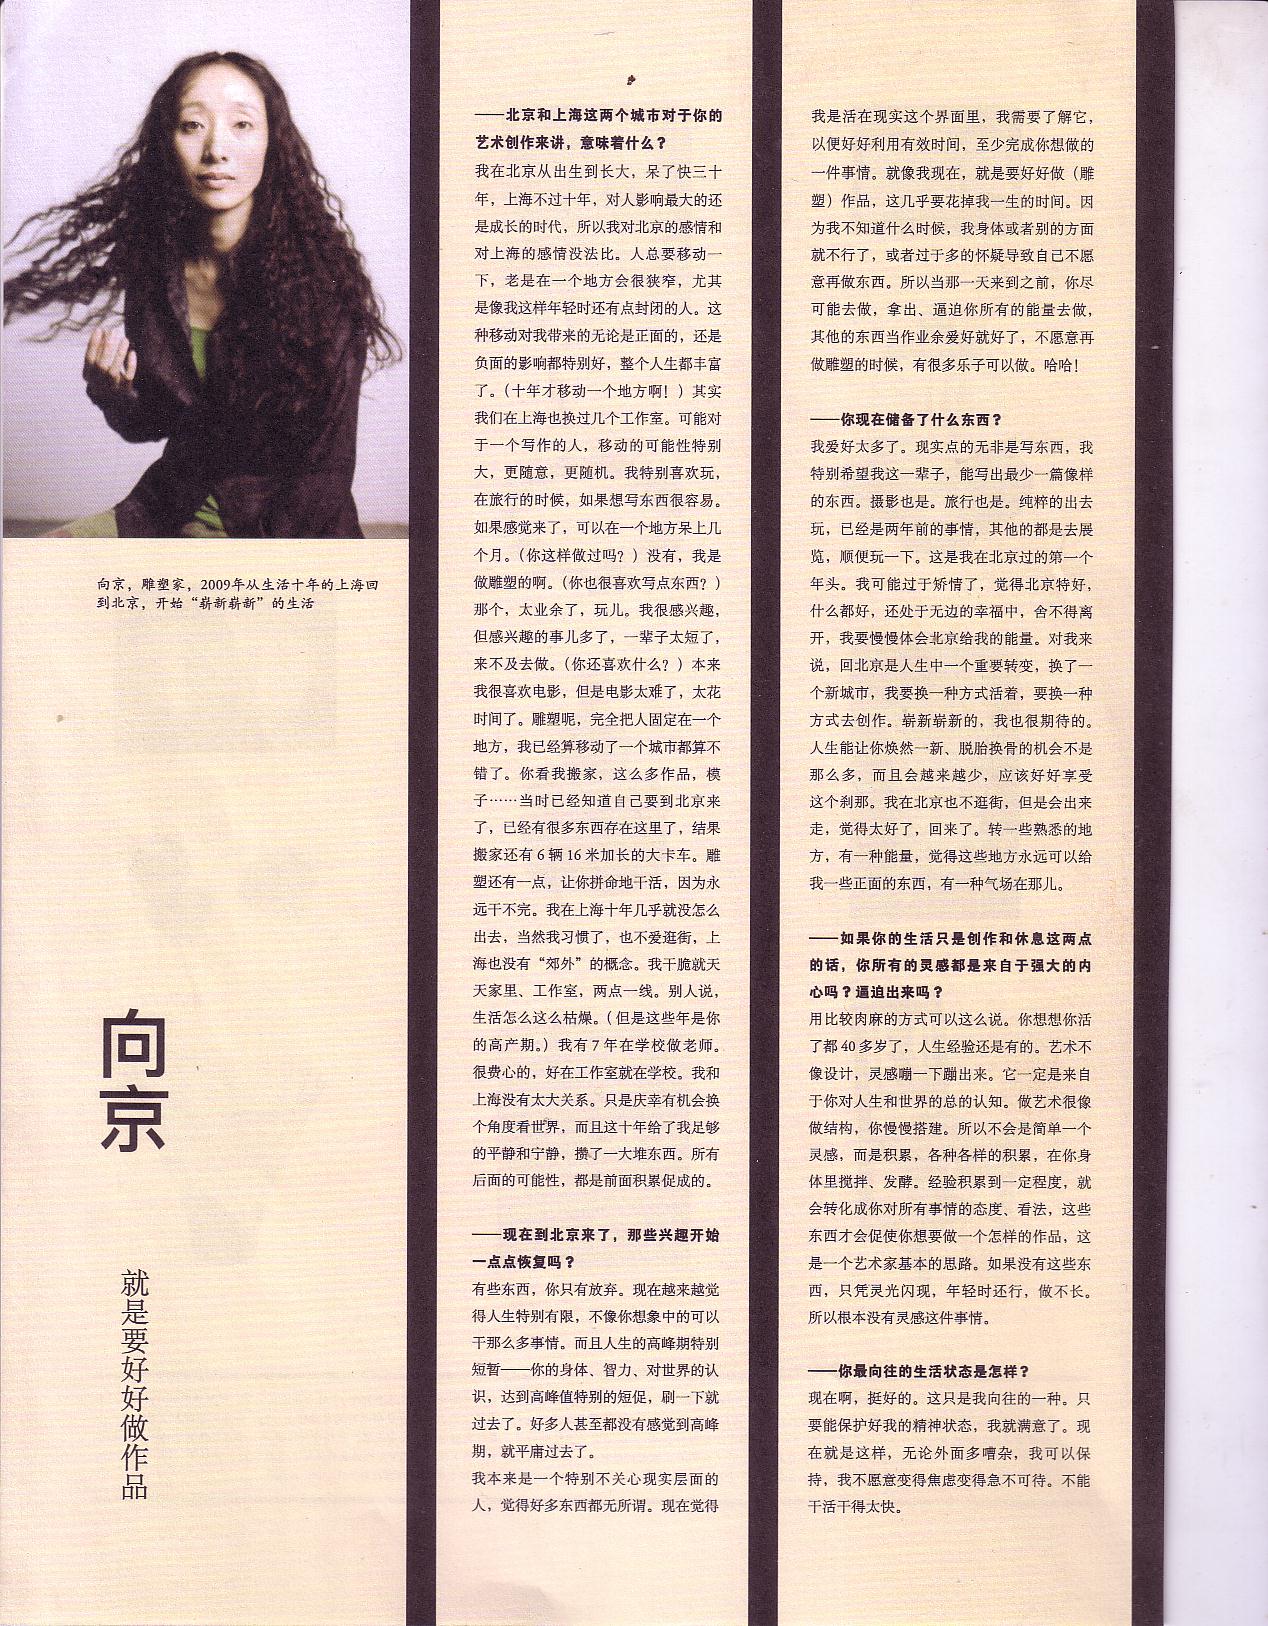 2009年新视线《创意百人：向京》赵思奇、骆骆 (1).JPG